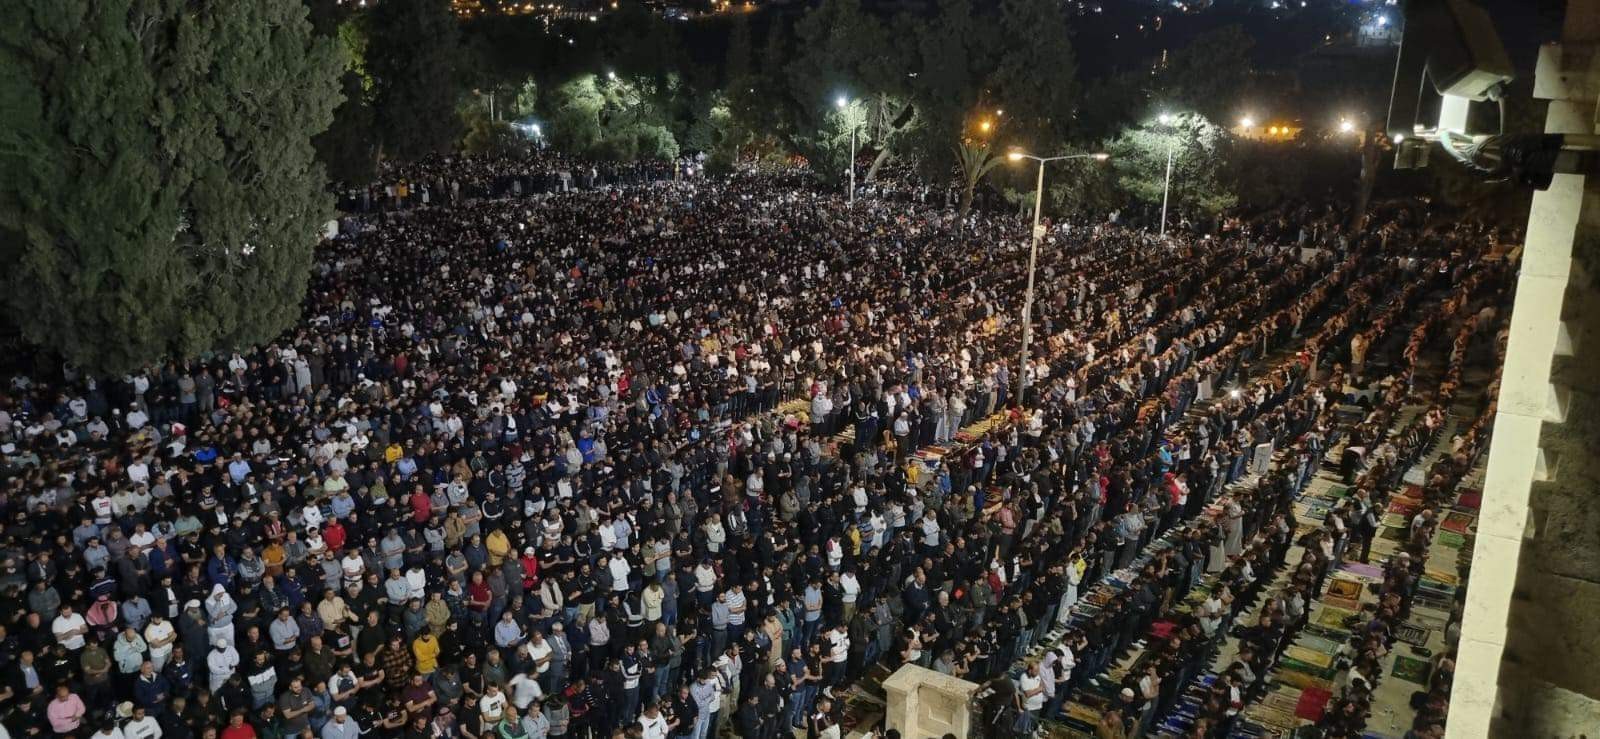 ليلة القدر في القدس3.jpeg